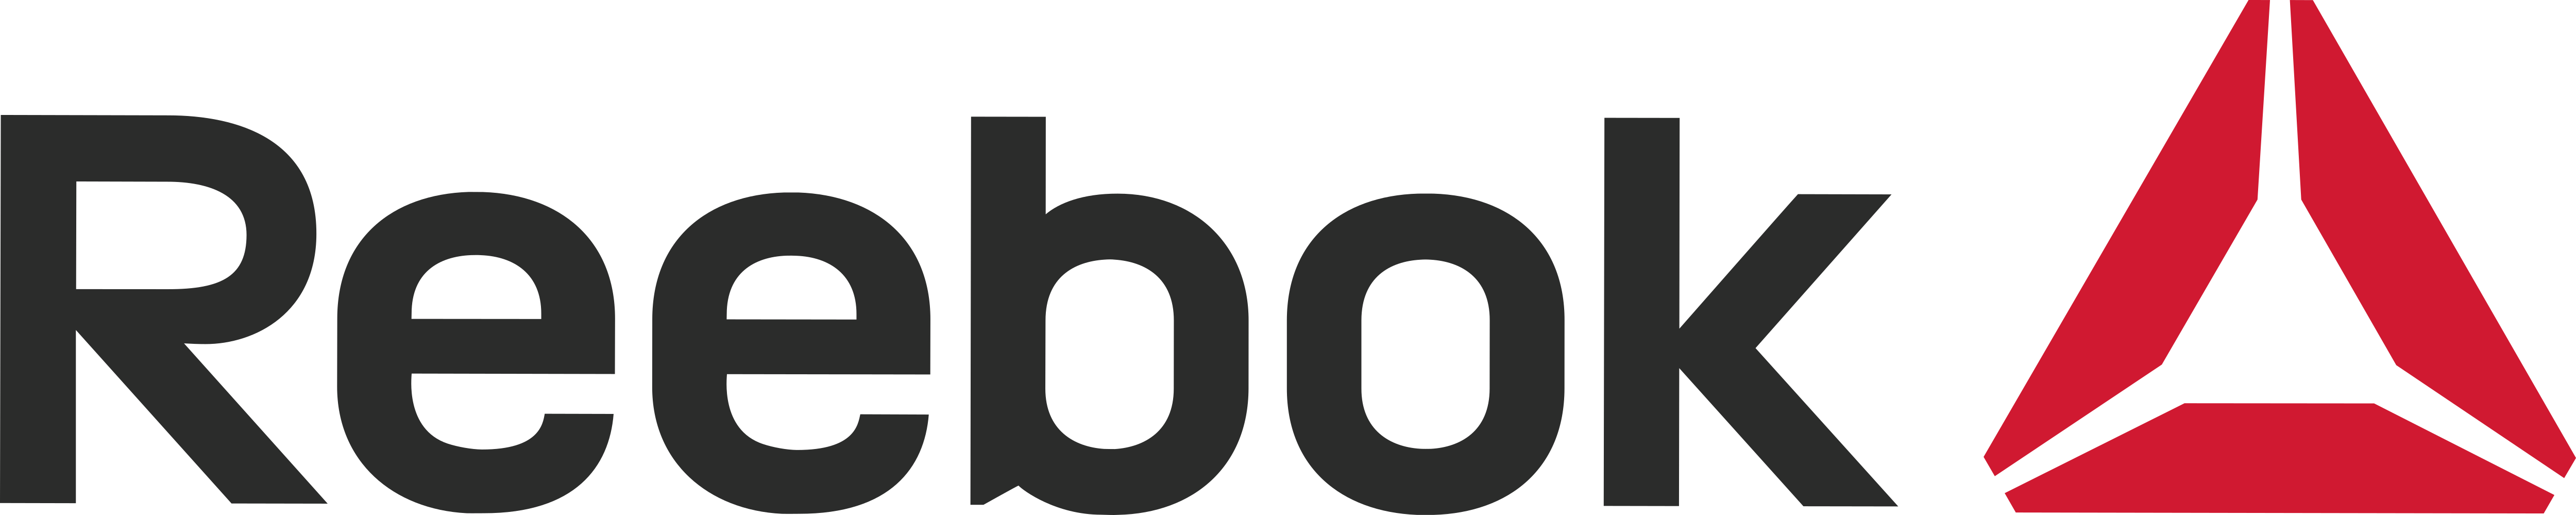 Reebok – Logos Download